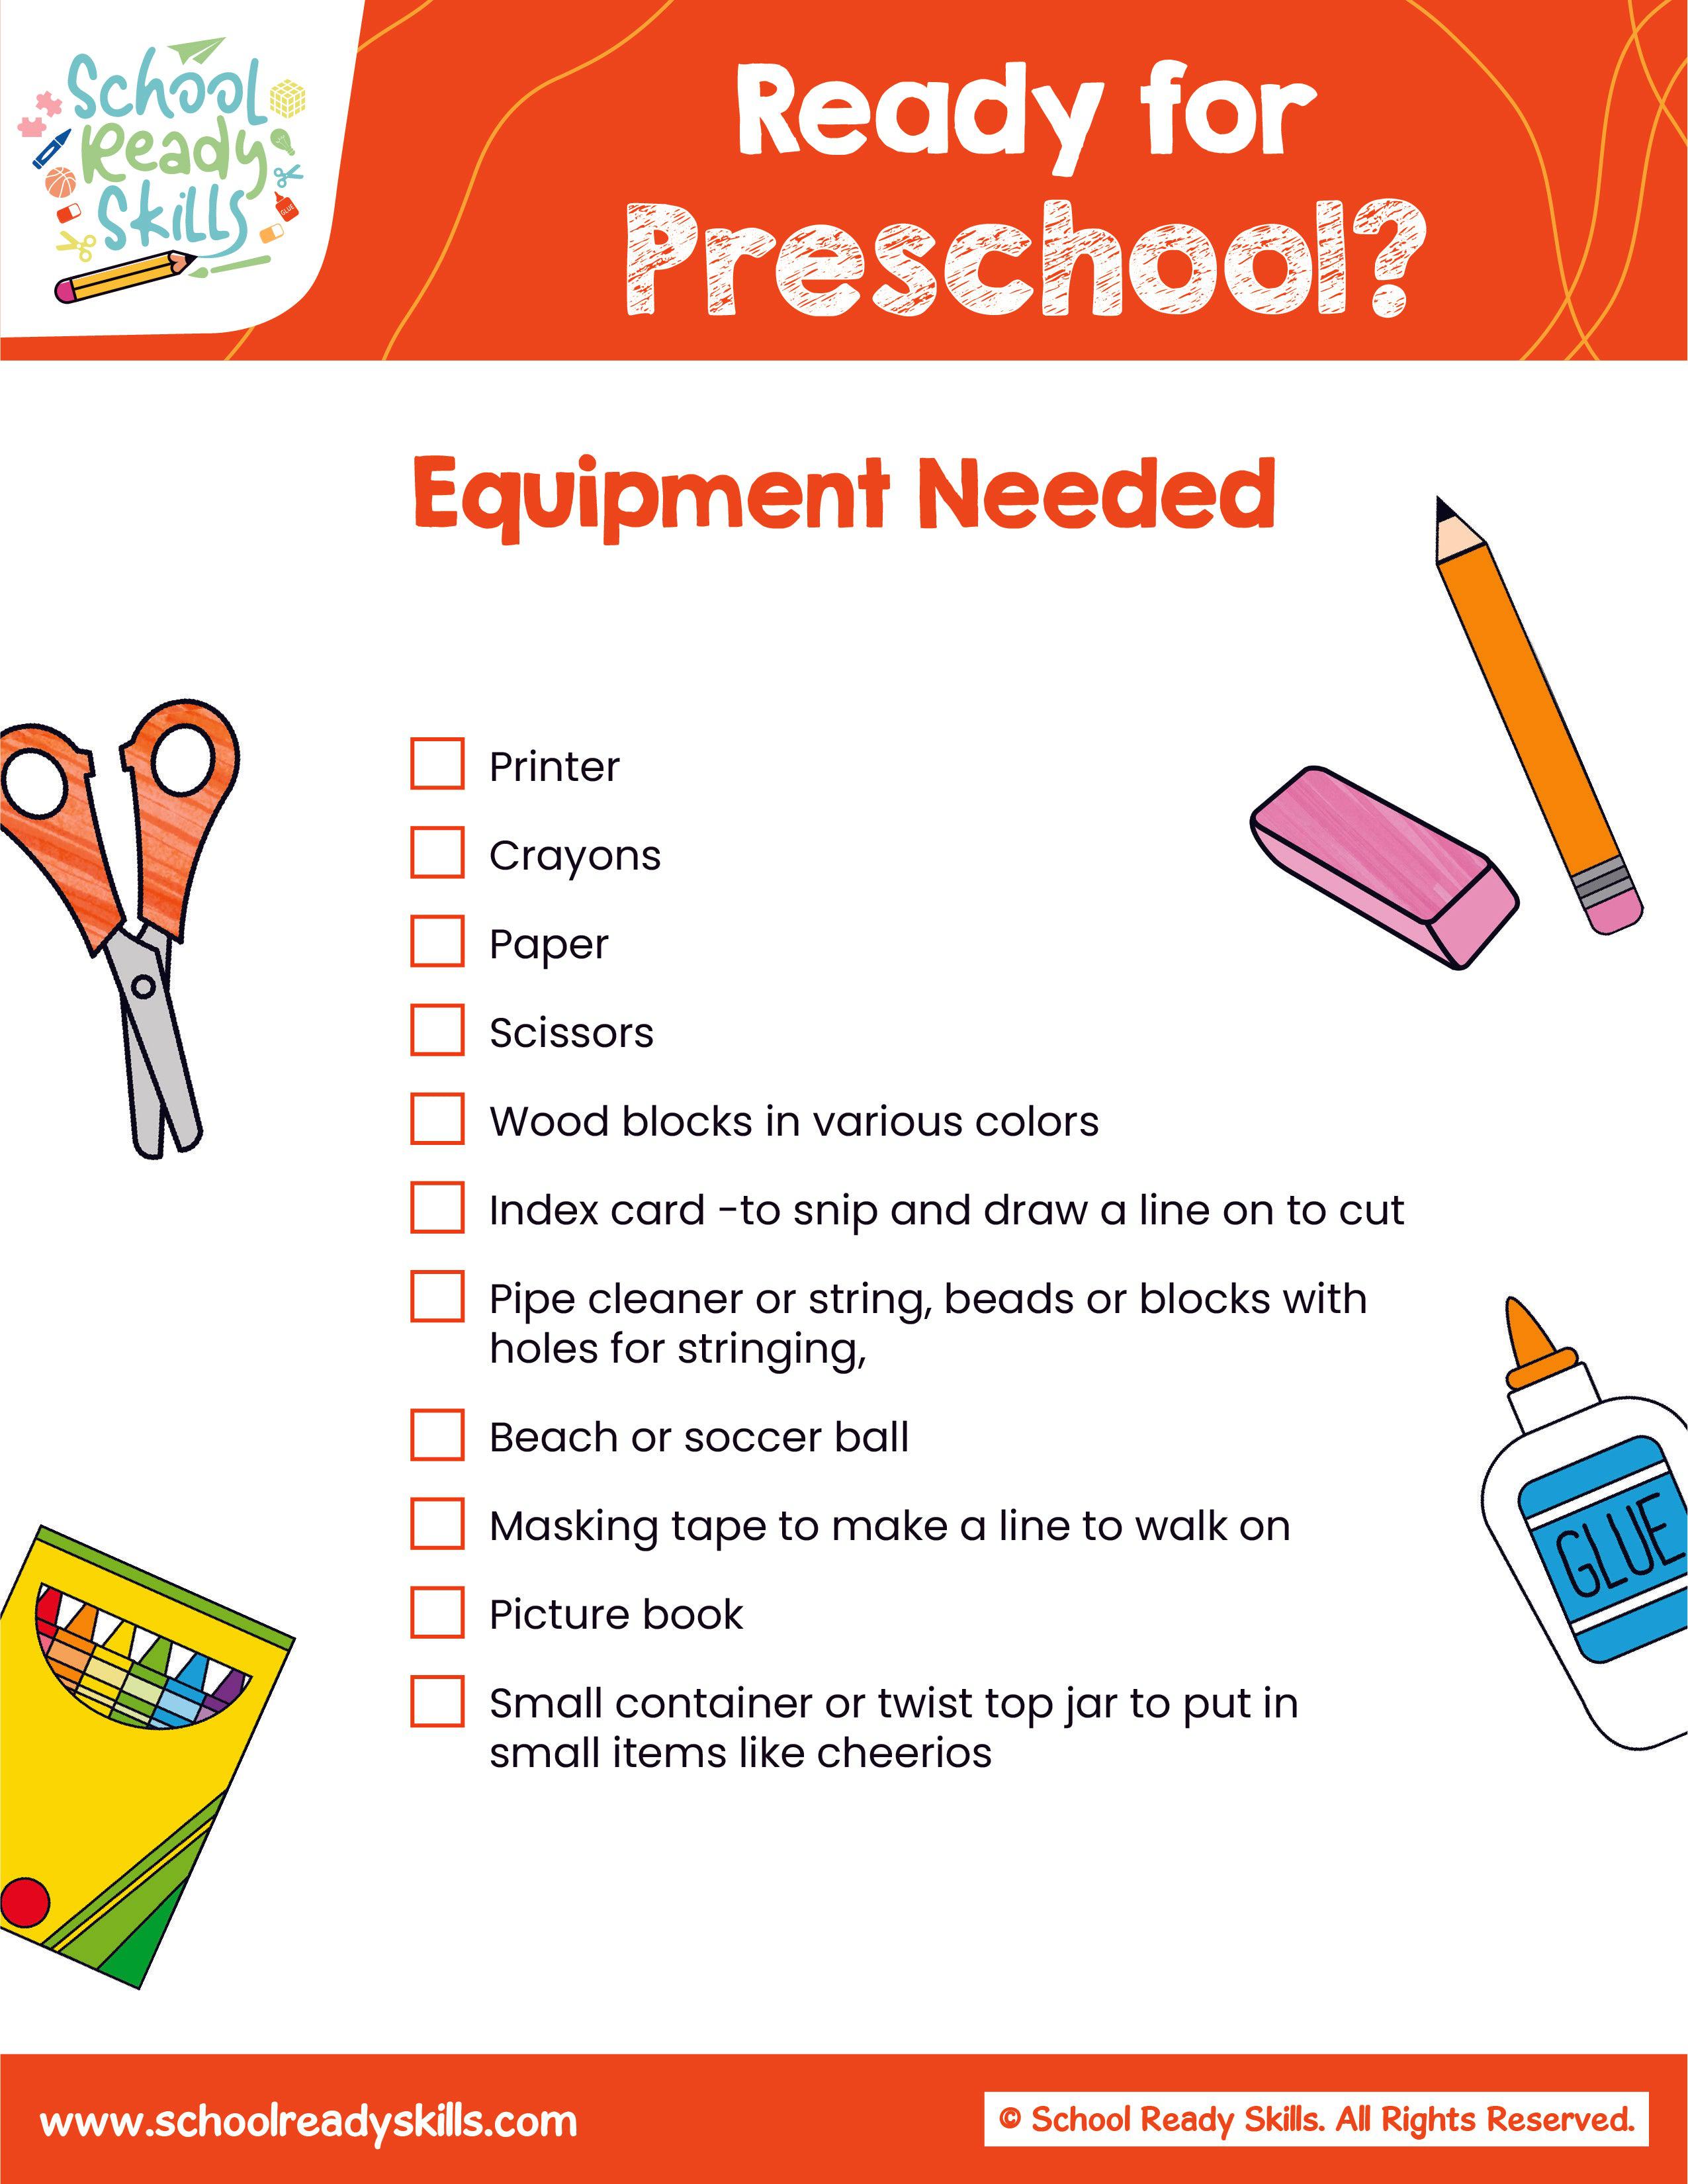 Ready for Preschool?